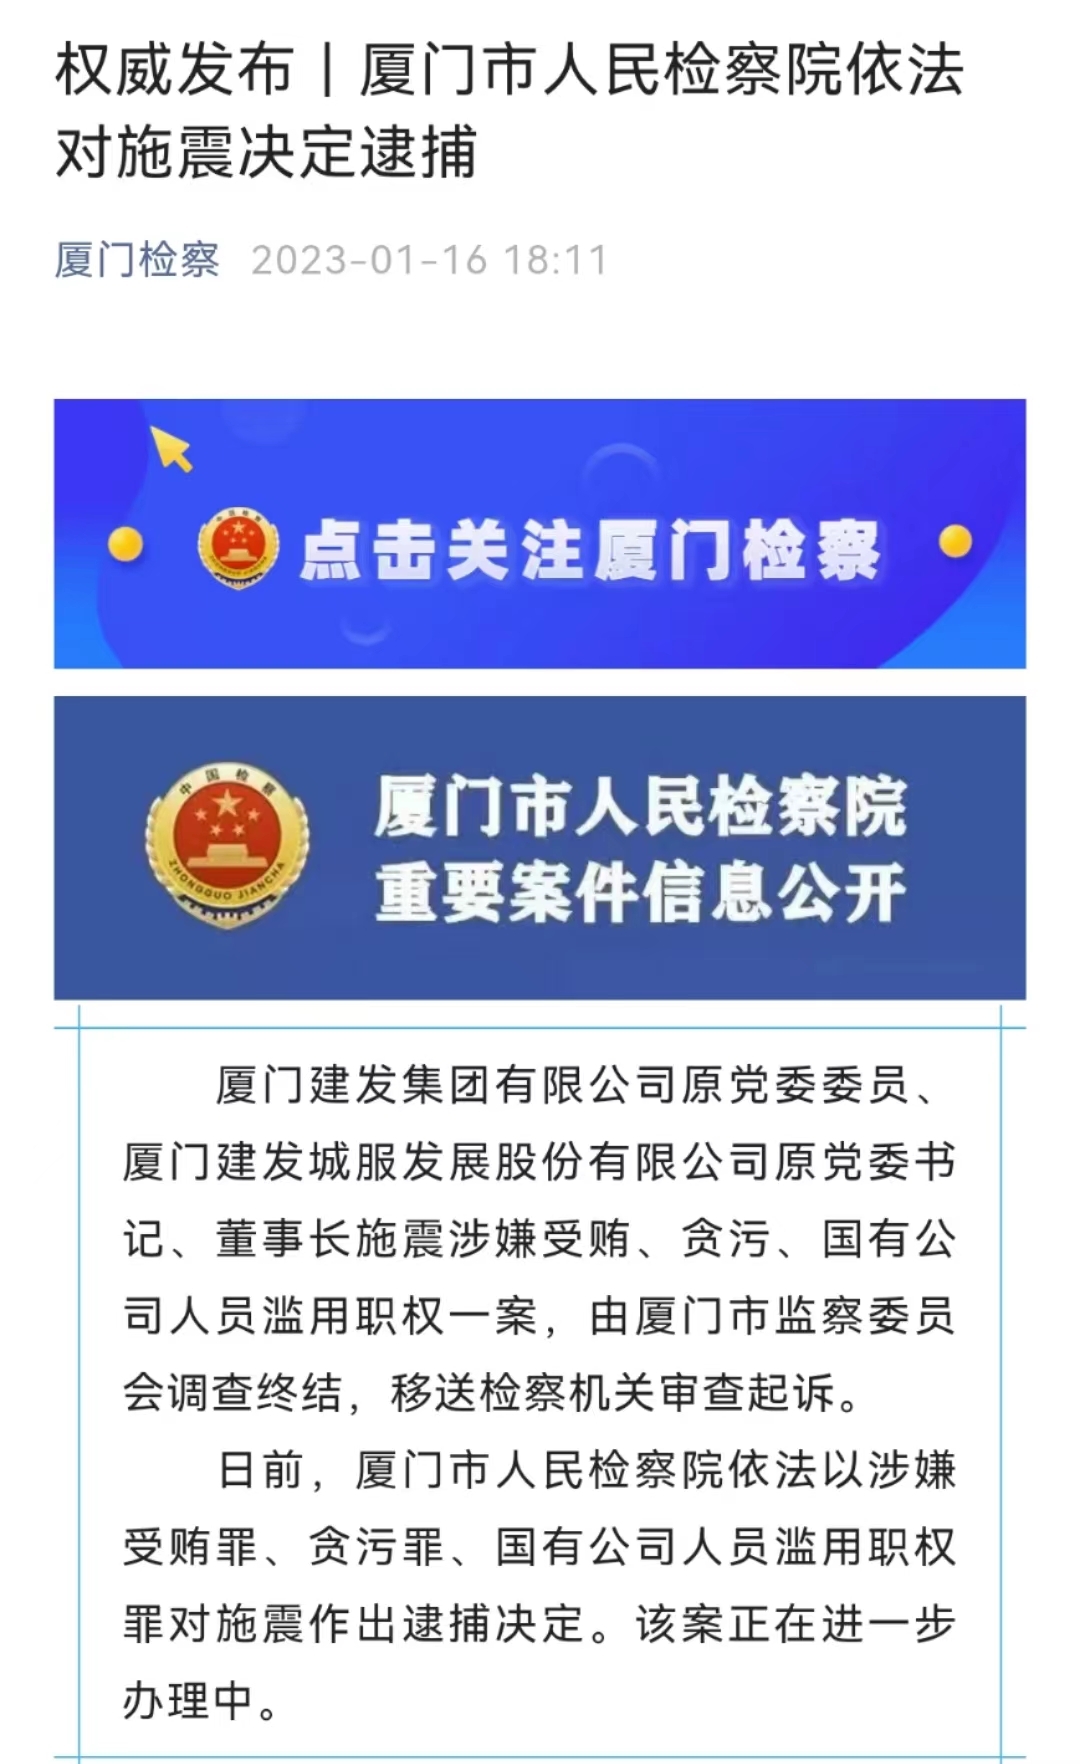 厦门建发集团庄跃凯、施震等两名原高管被依法逮捕